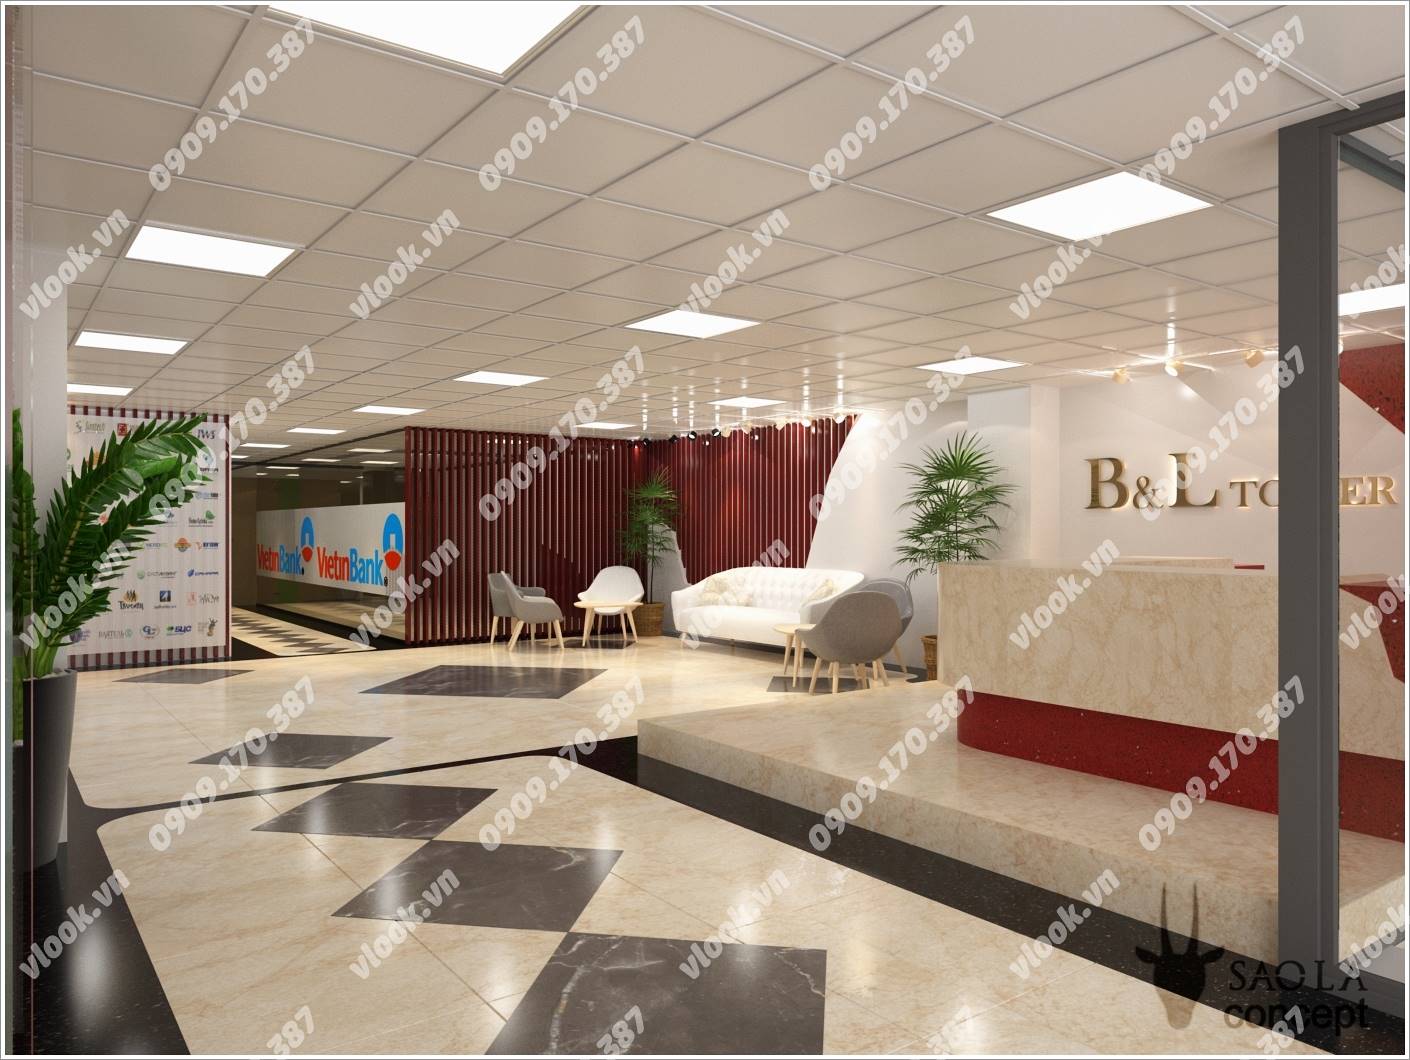 Cao ốc cho thuê văn phòng B&L Tower, Ung Văn Khiêm, Quận Bình Thạnh, TPHCM - vlook.vn